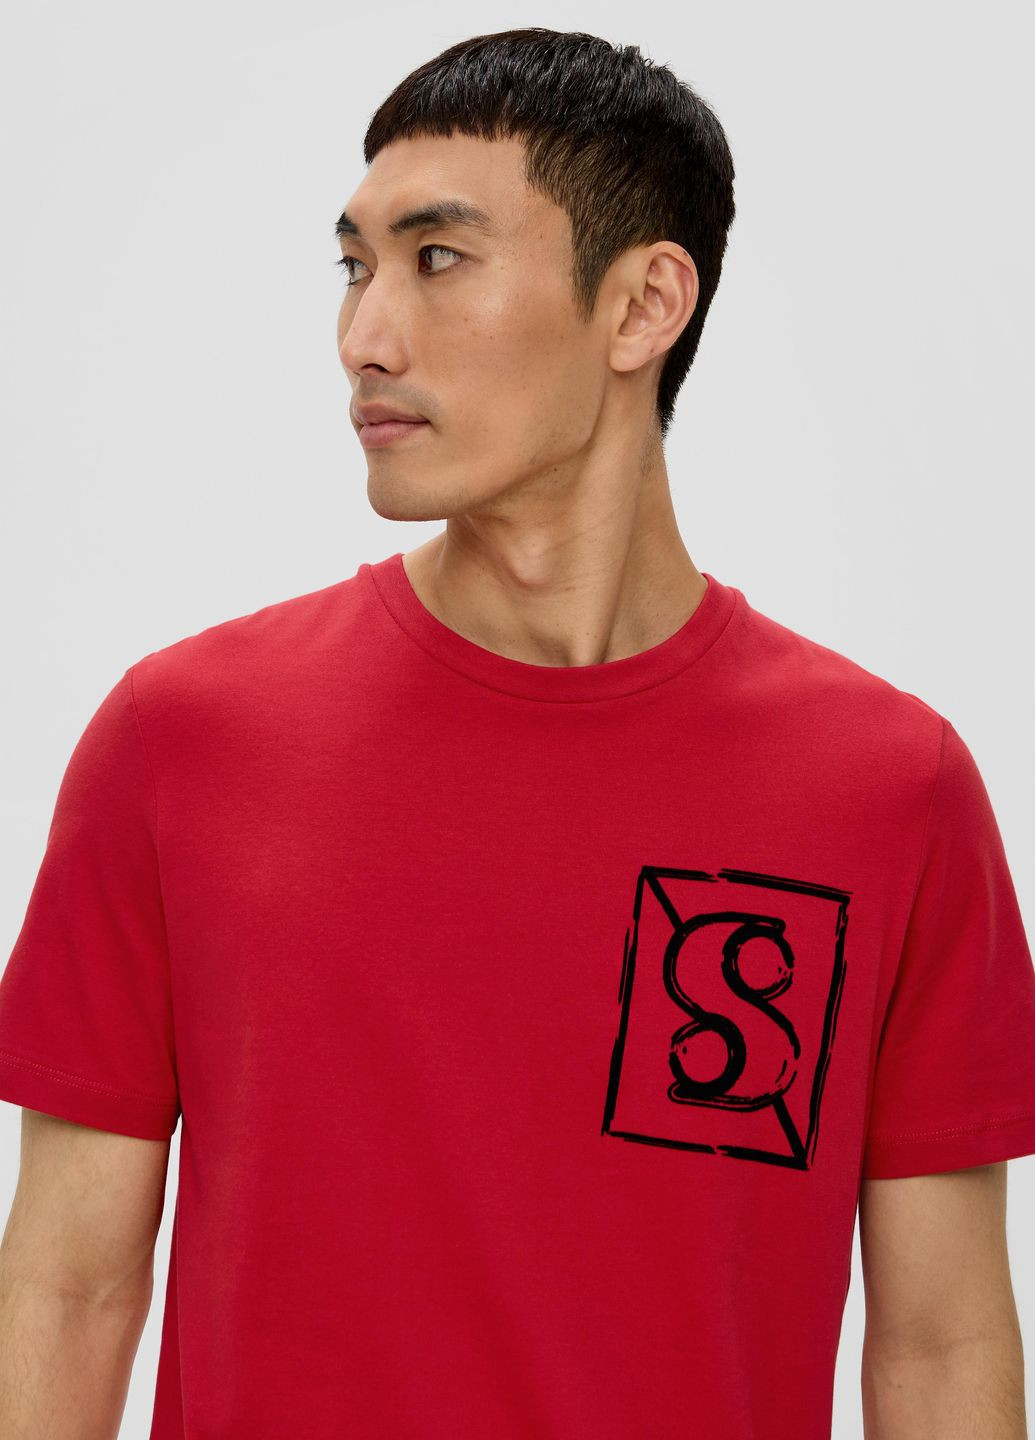 Червона футболка S.Oliver